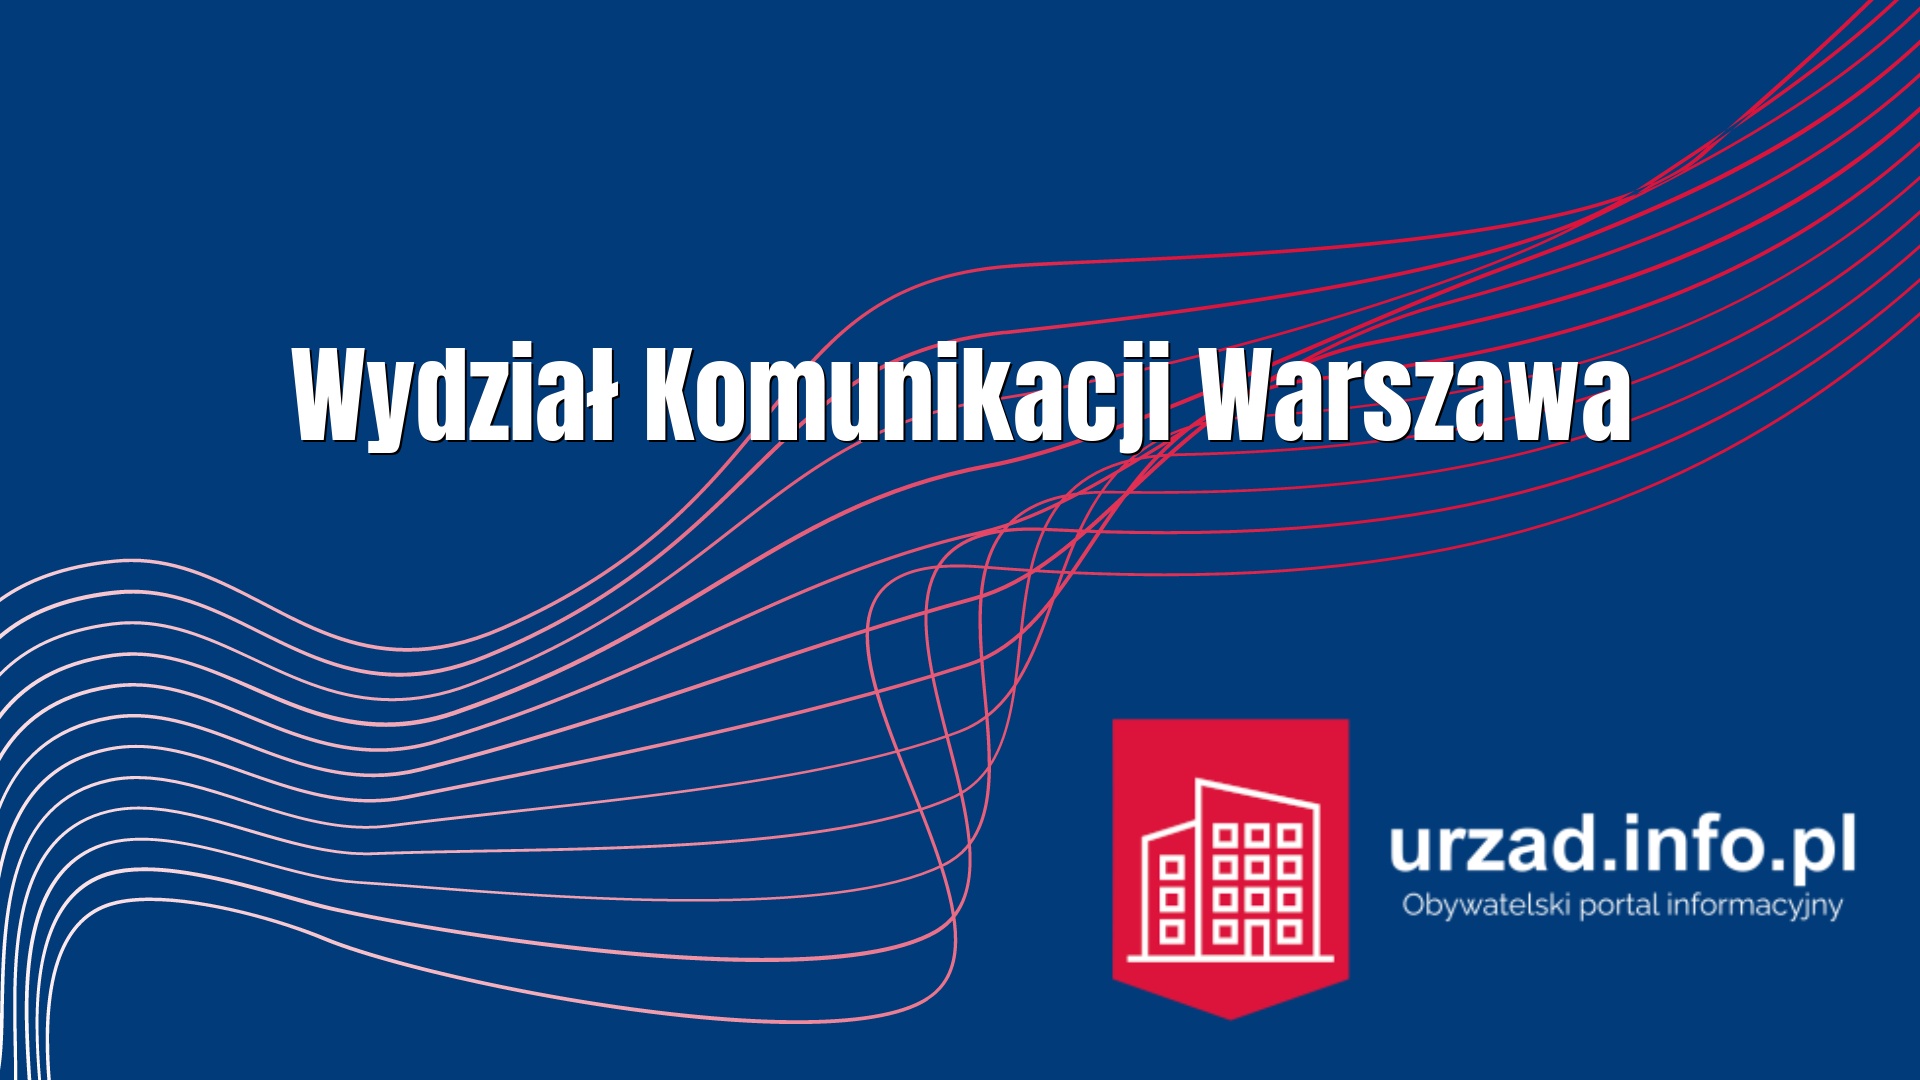 Wydział Komunikacji Warszawa